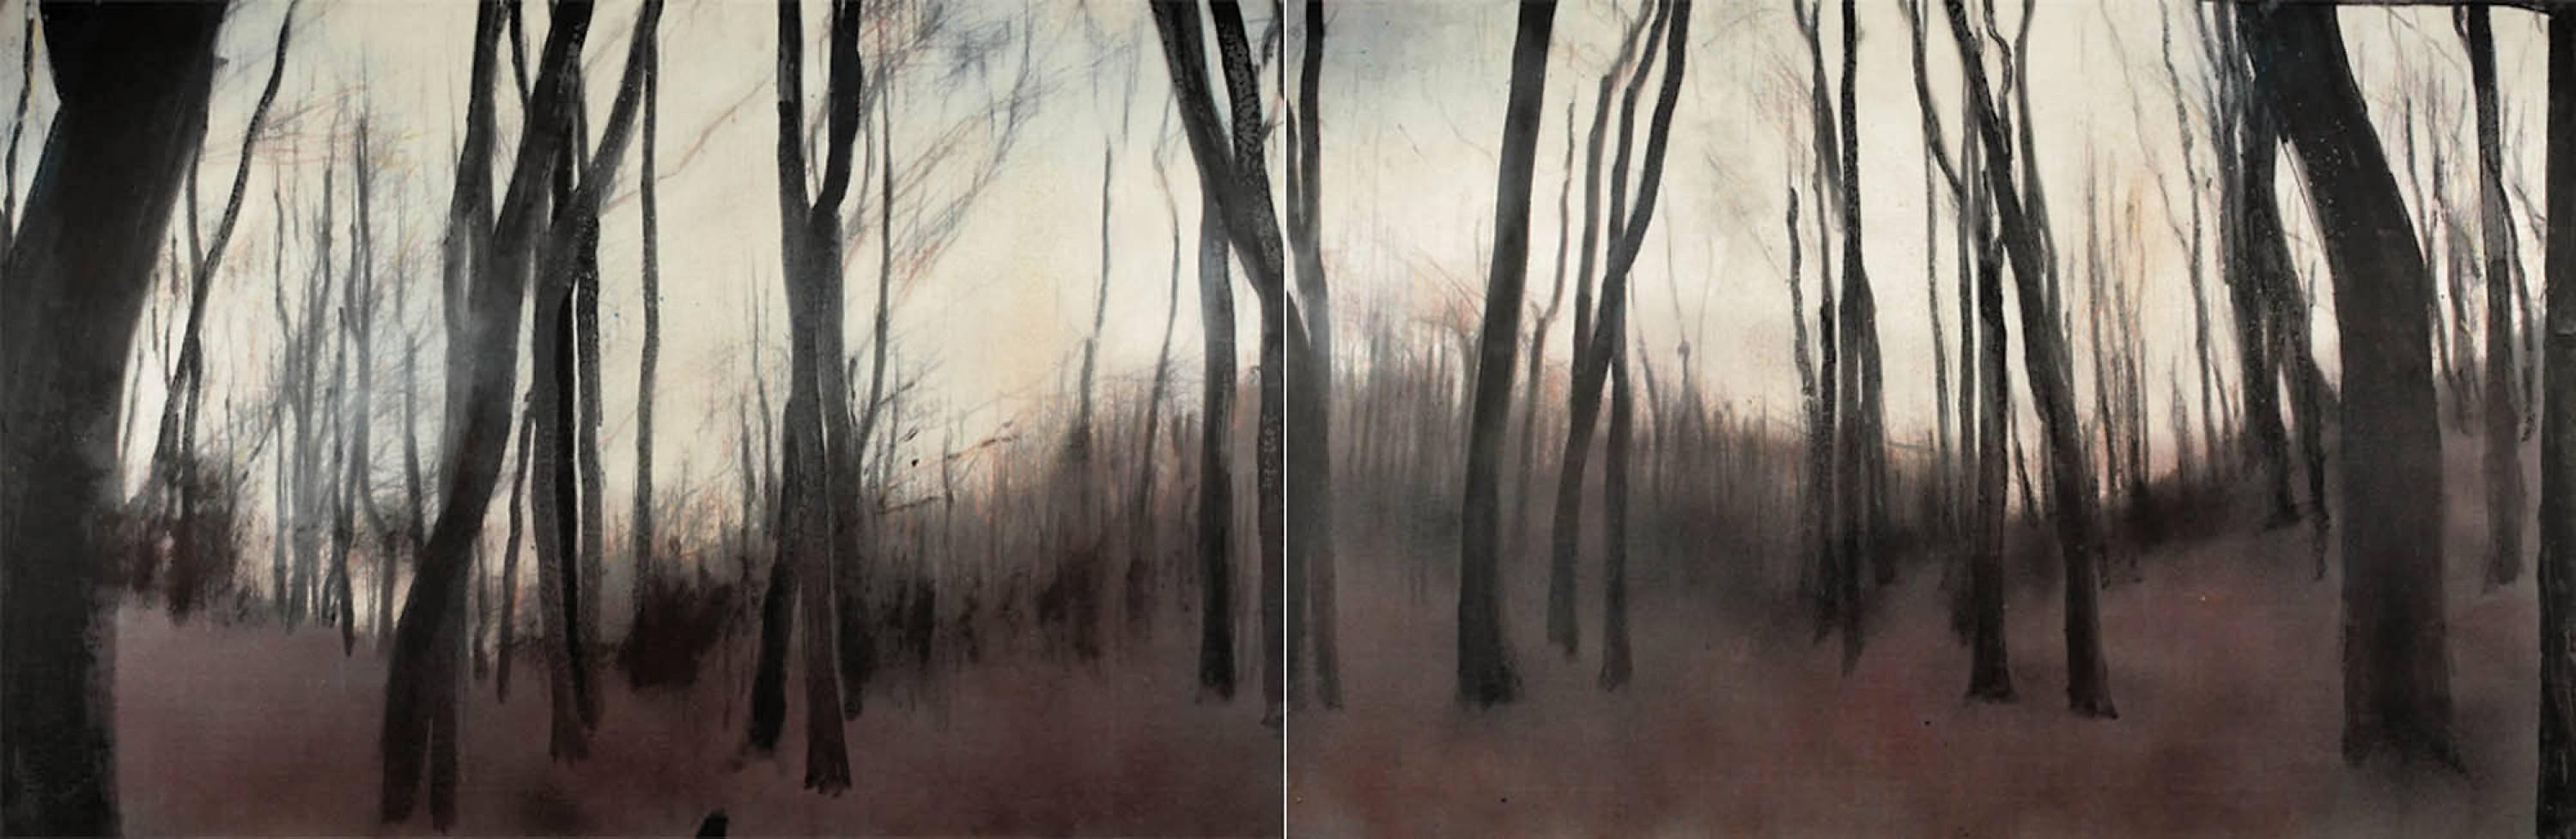 Apfelweinwald V (Diptychon) - Contemporary, Landschaft, Beige, Brown, Bäume, Nature